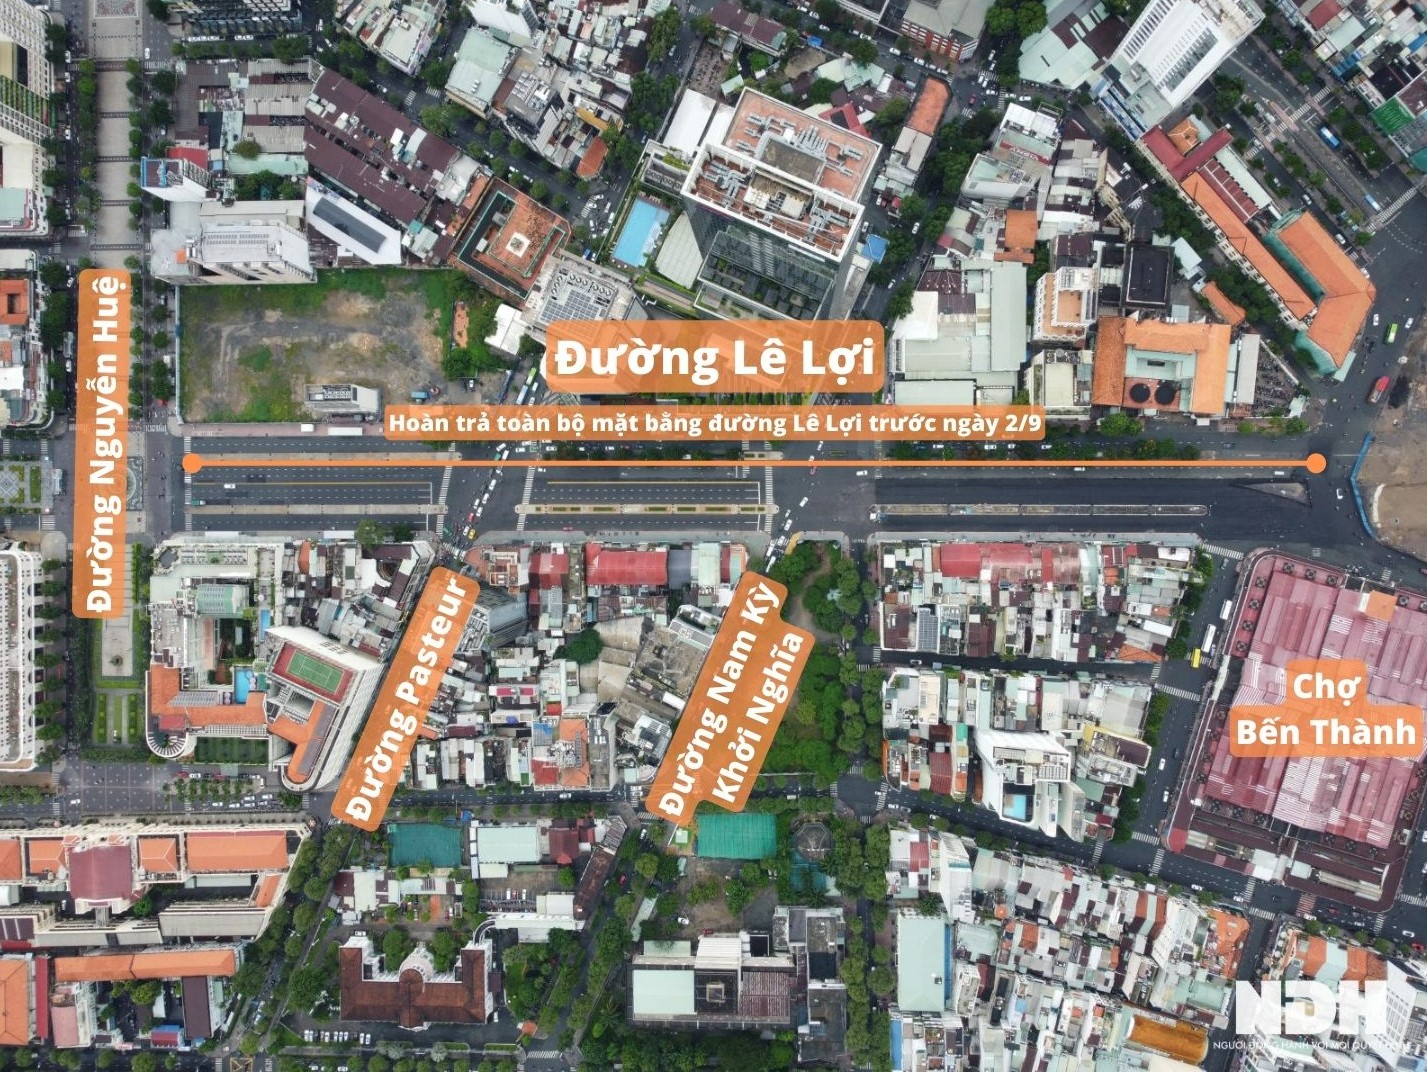 Tuyến metro số 1 TP HCM: Trả toàn bộ mặt bằng đường Lê Lợi trước 2/9, giá thuê mặt tiền kinh doanh đến trăm triệu đồng/tháng - Ảnh 1.